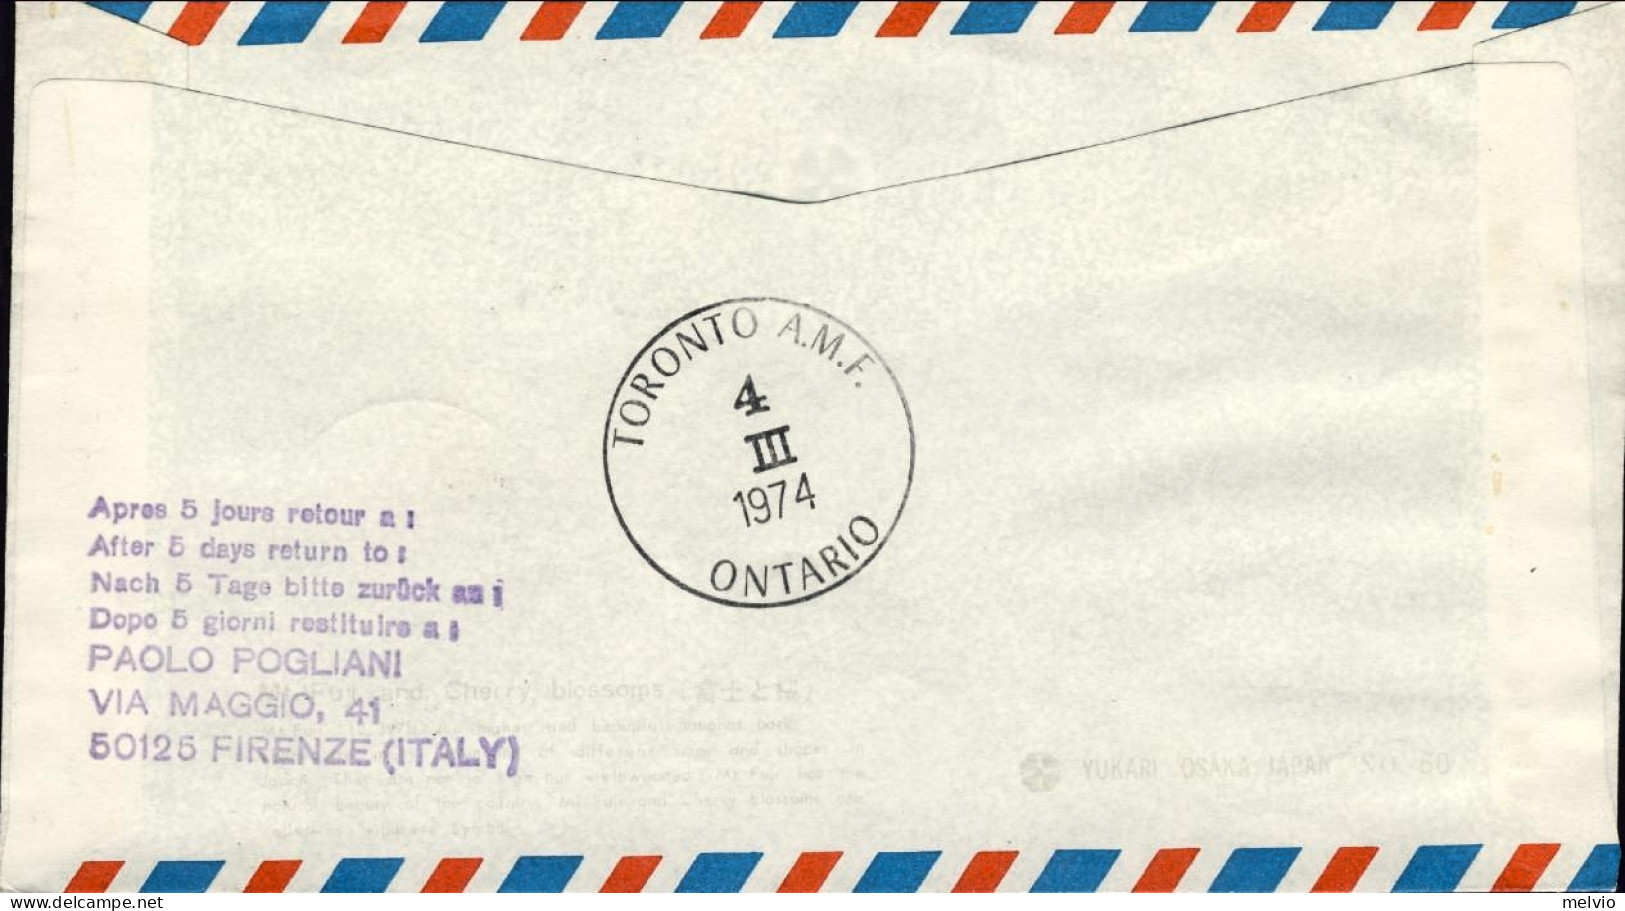 1974-Canadian Pacific I^volo Toronto Milano Del 4 Marzo, - Primi Voli